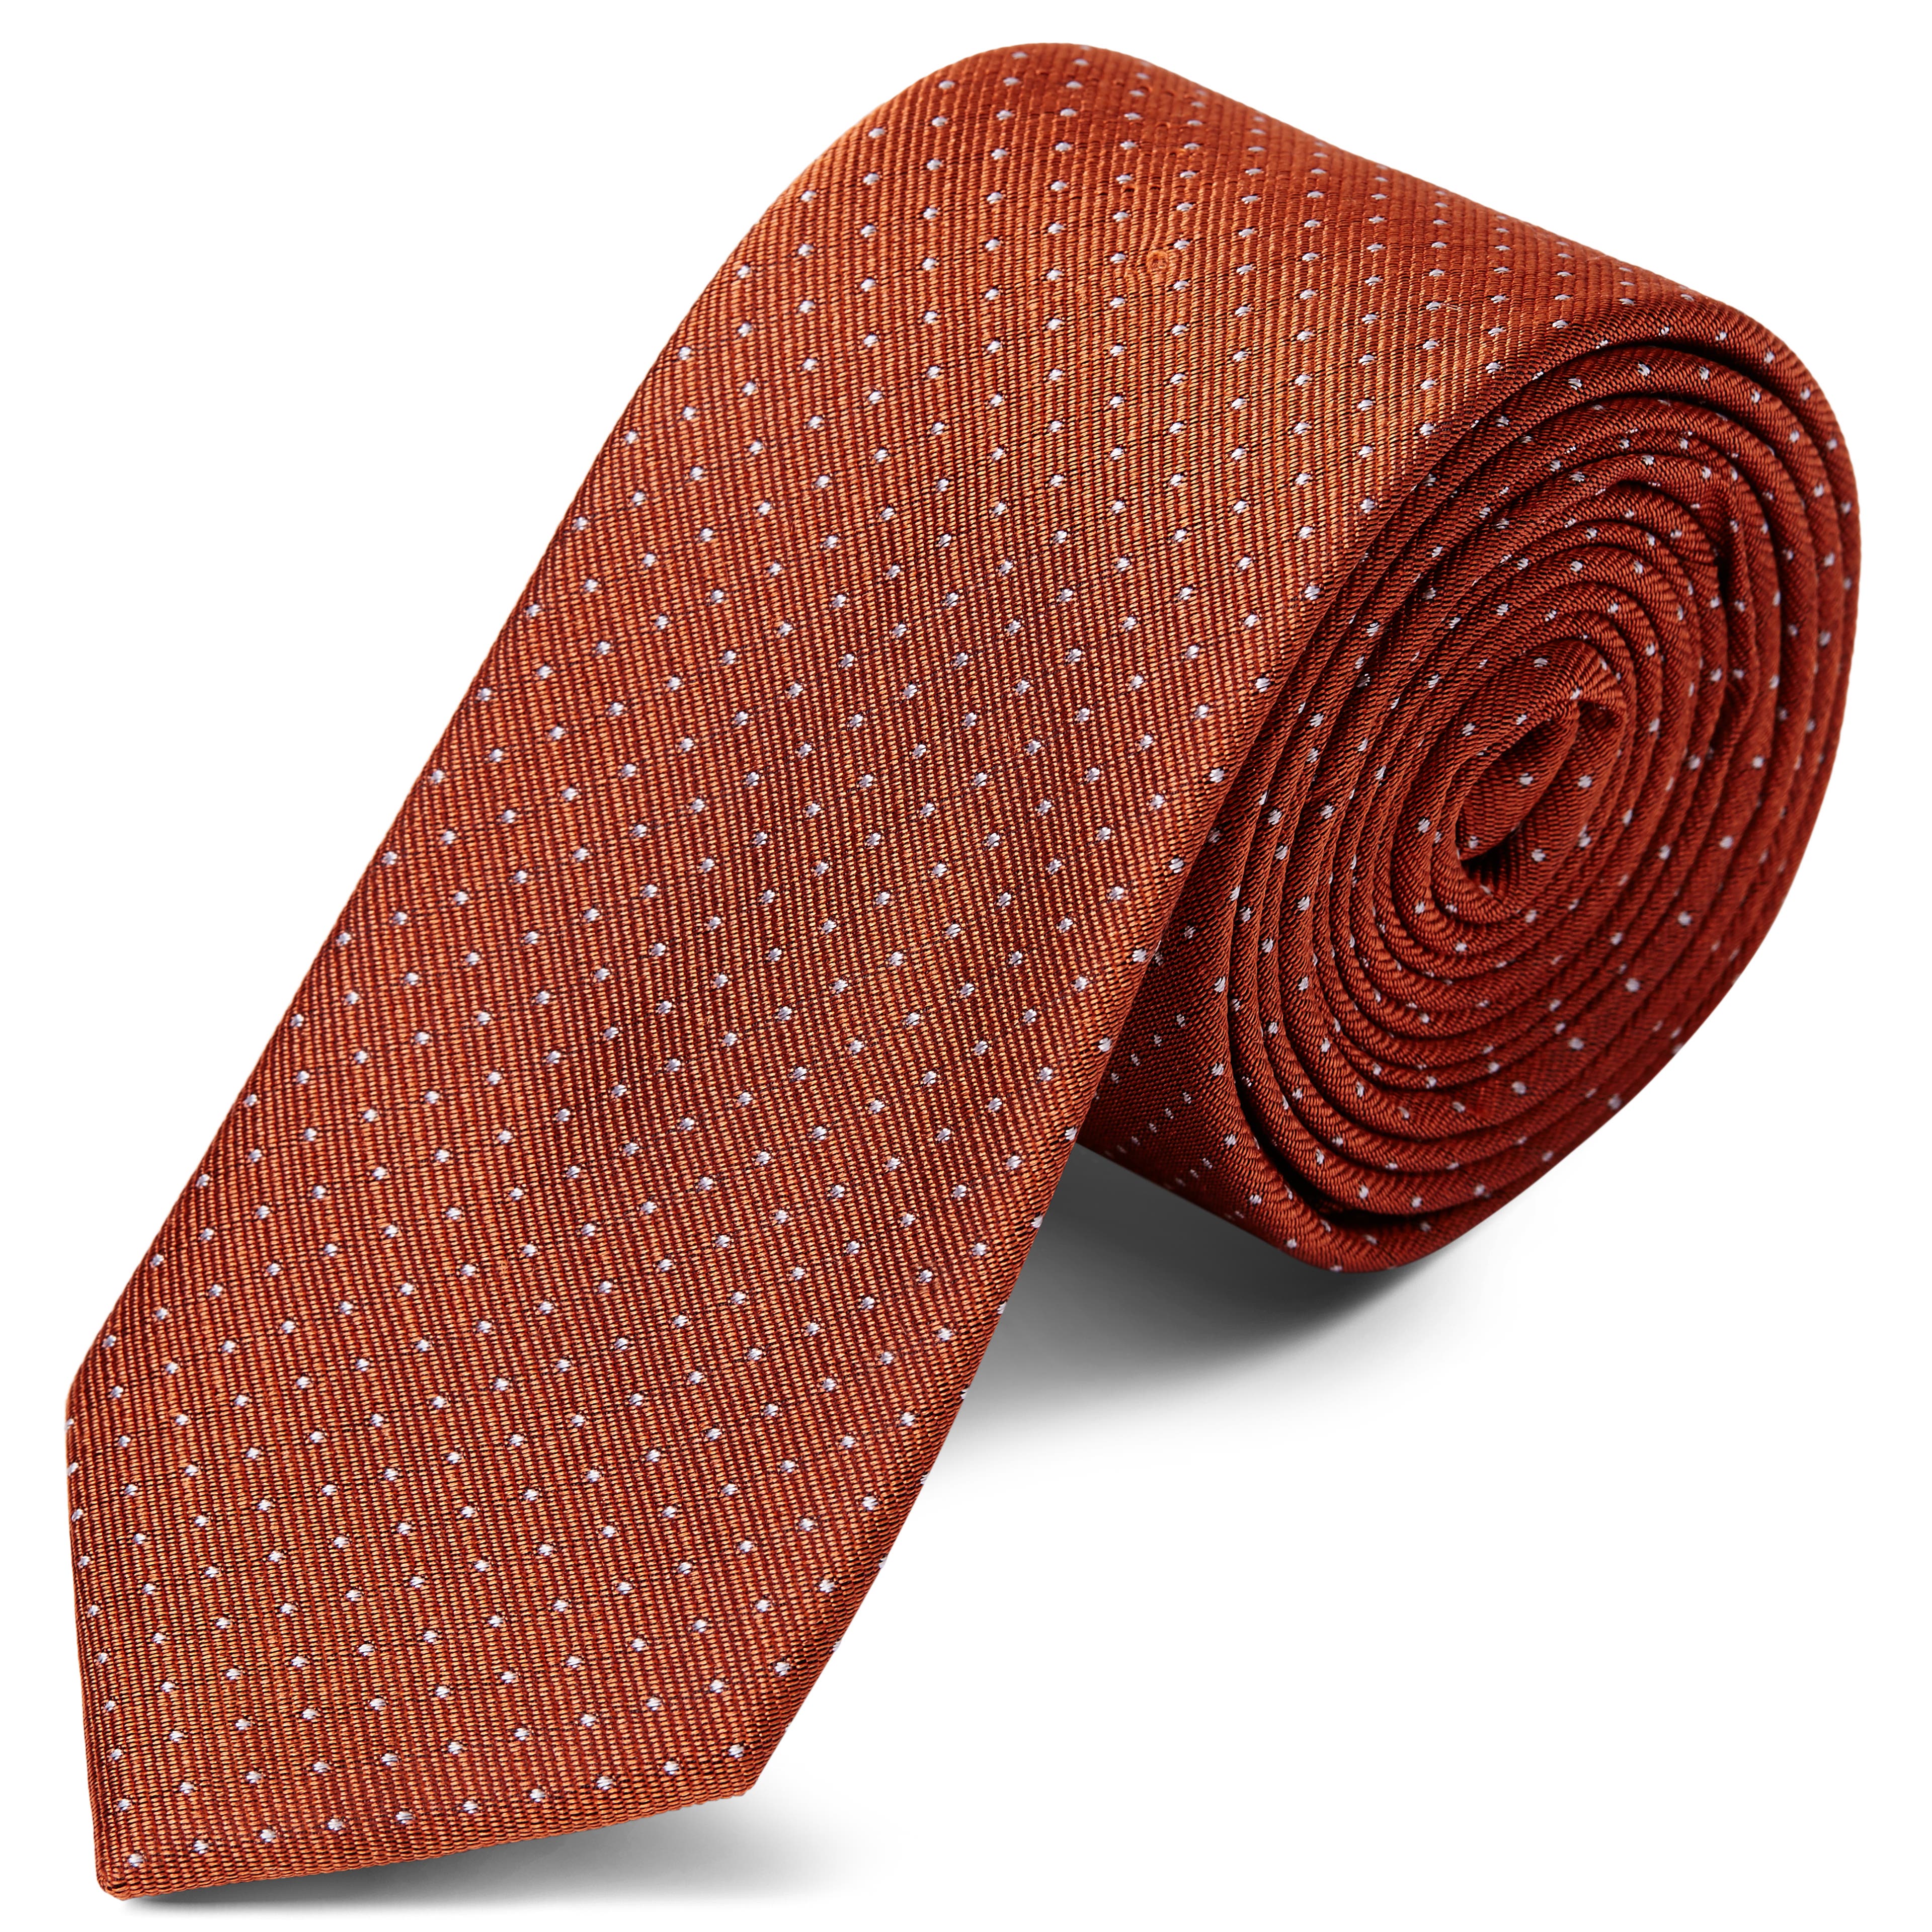 Cravată 6 cm din mătase maro-cafenie cu picățele